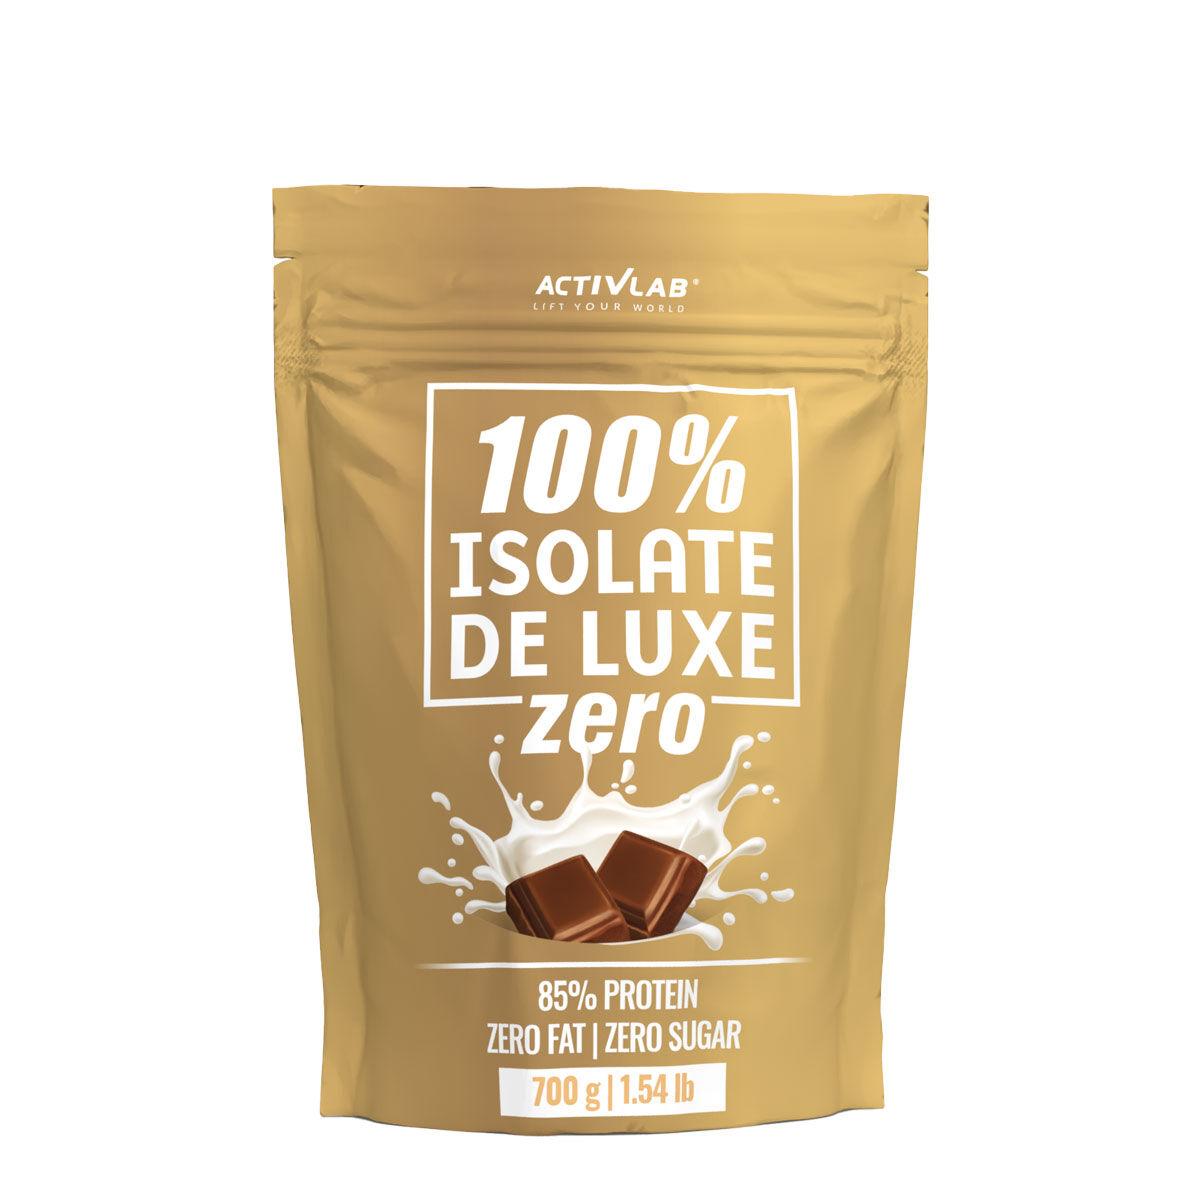 ACTIVLAB Whey protein Isolate 100% de Luxe zero čokolada 700g